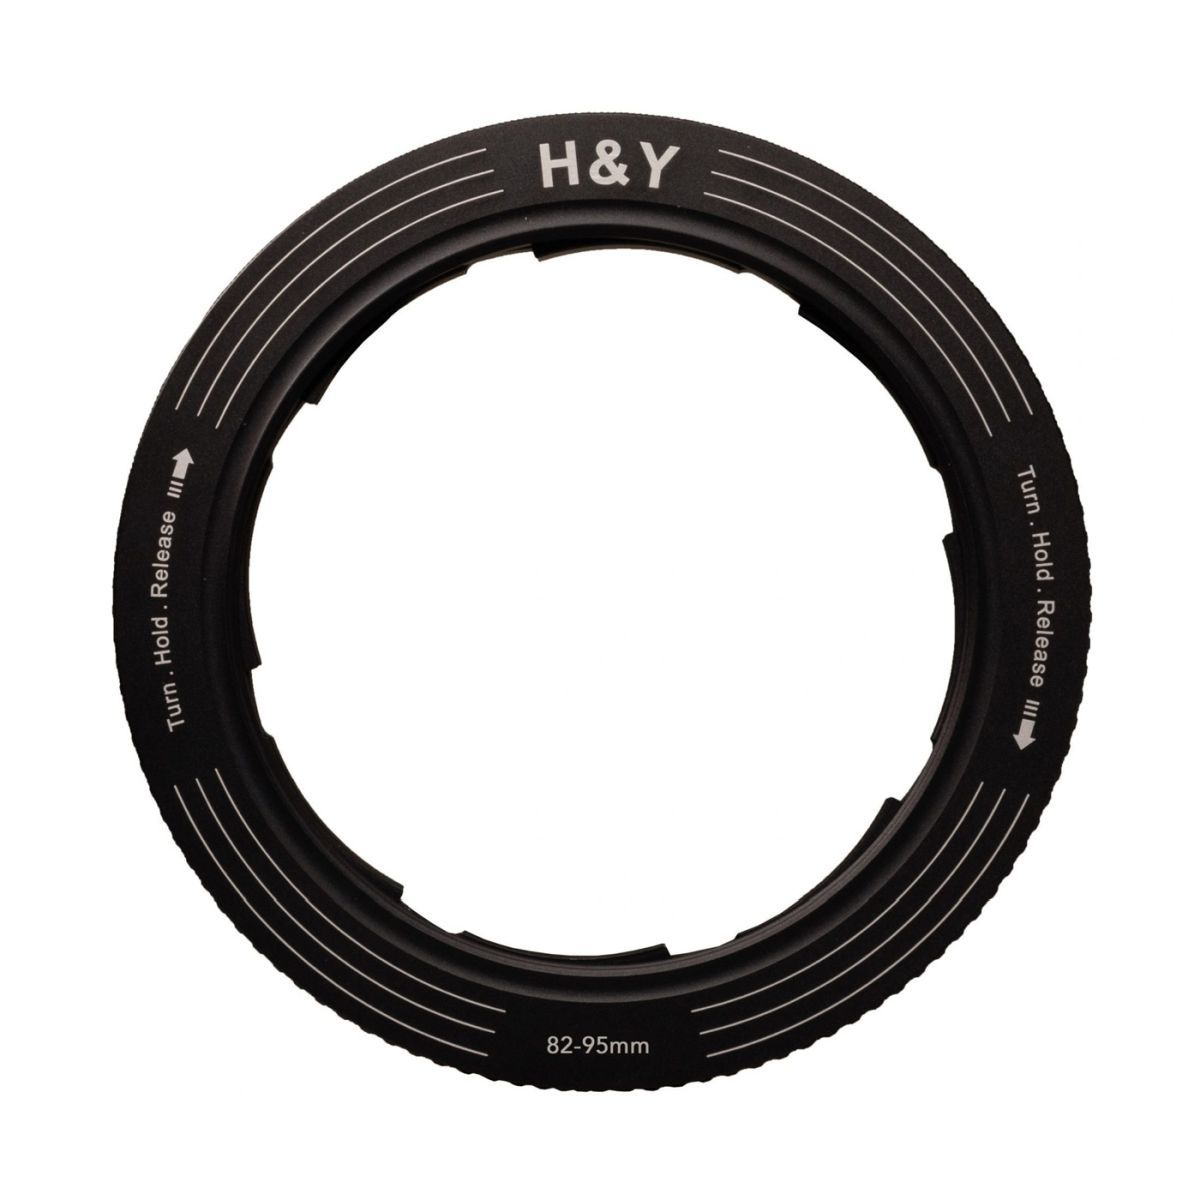 H&Y REVORING 82-95 mm Filteradapter für 95 mm Filter